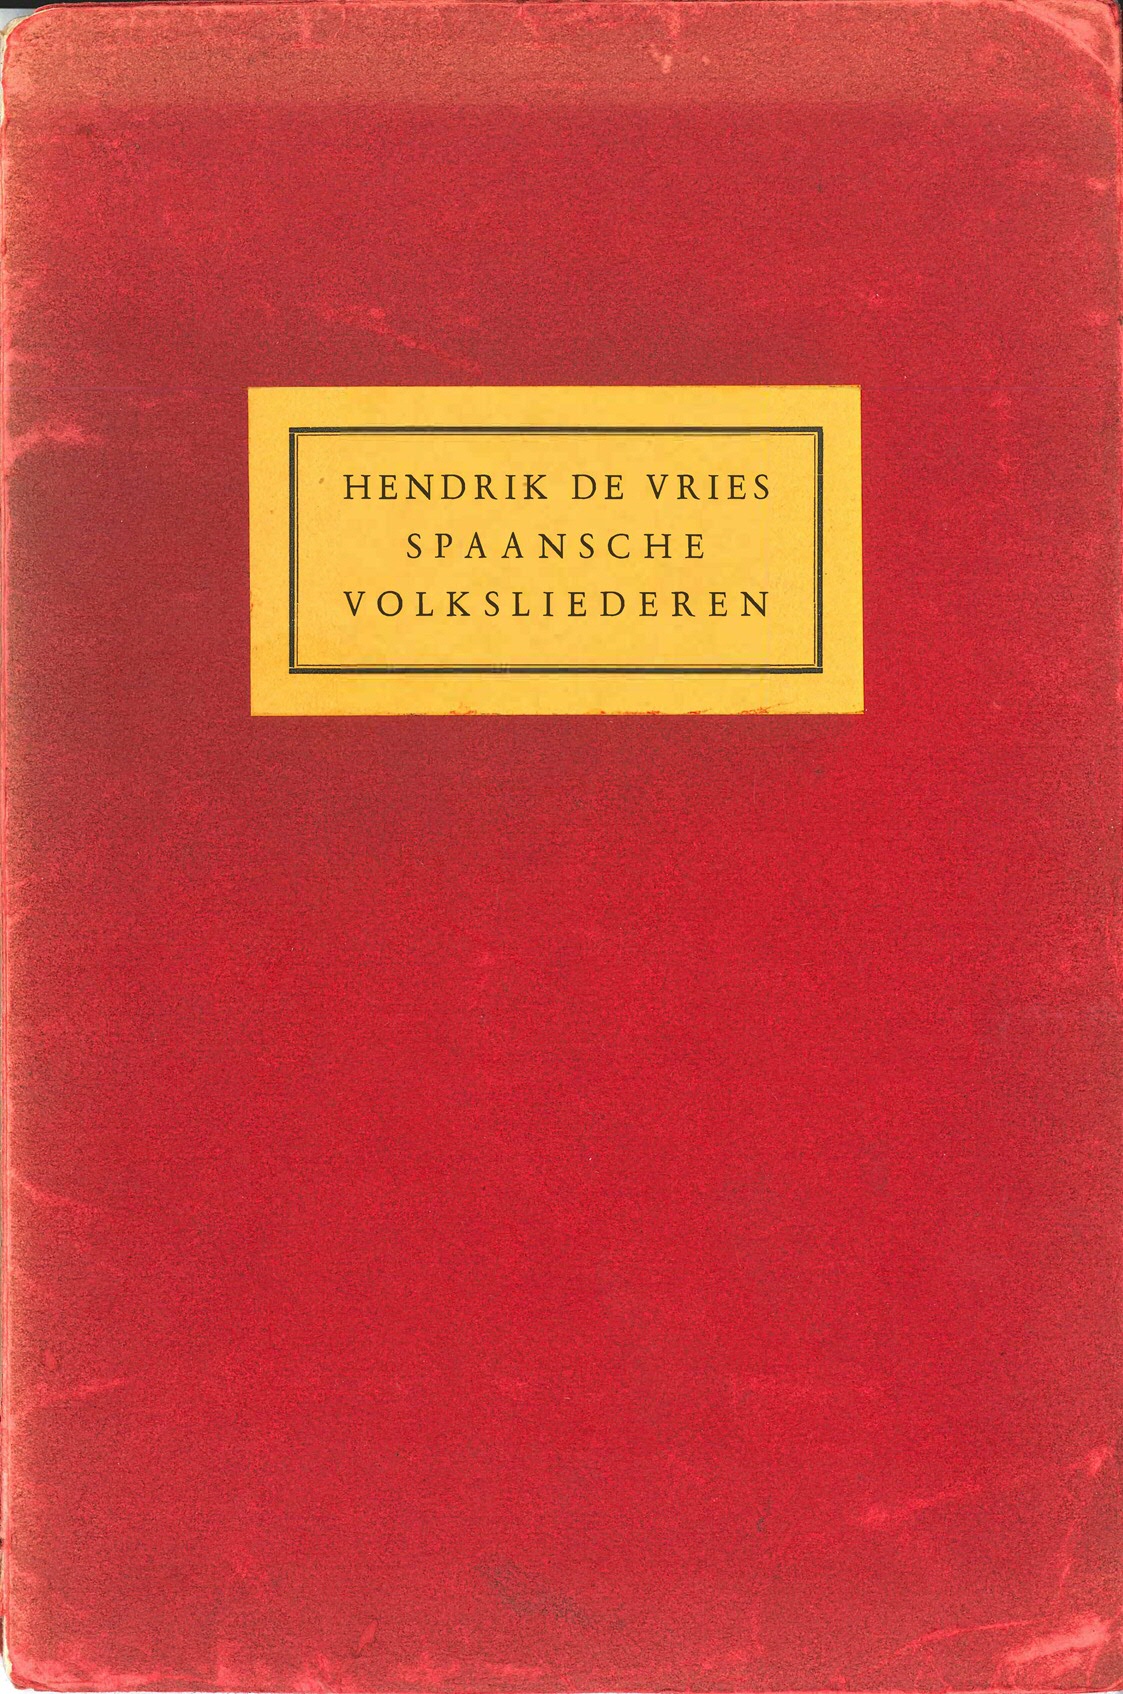 3. Cover Spaansche Volksliederen (1931)